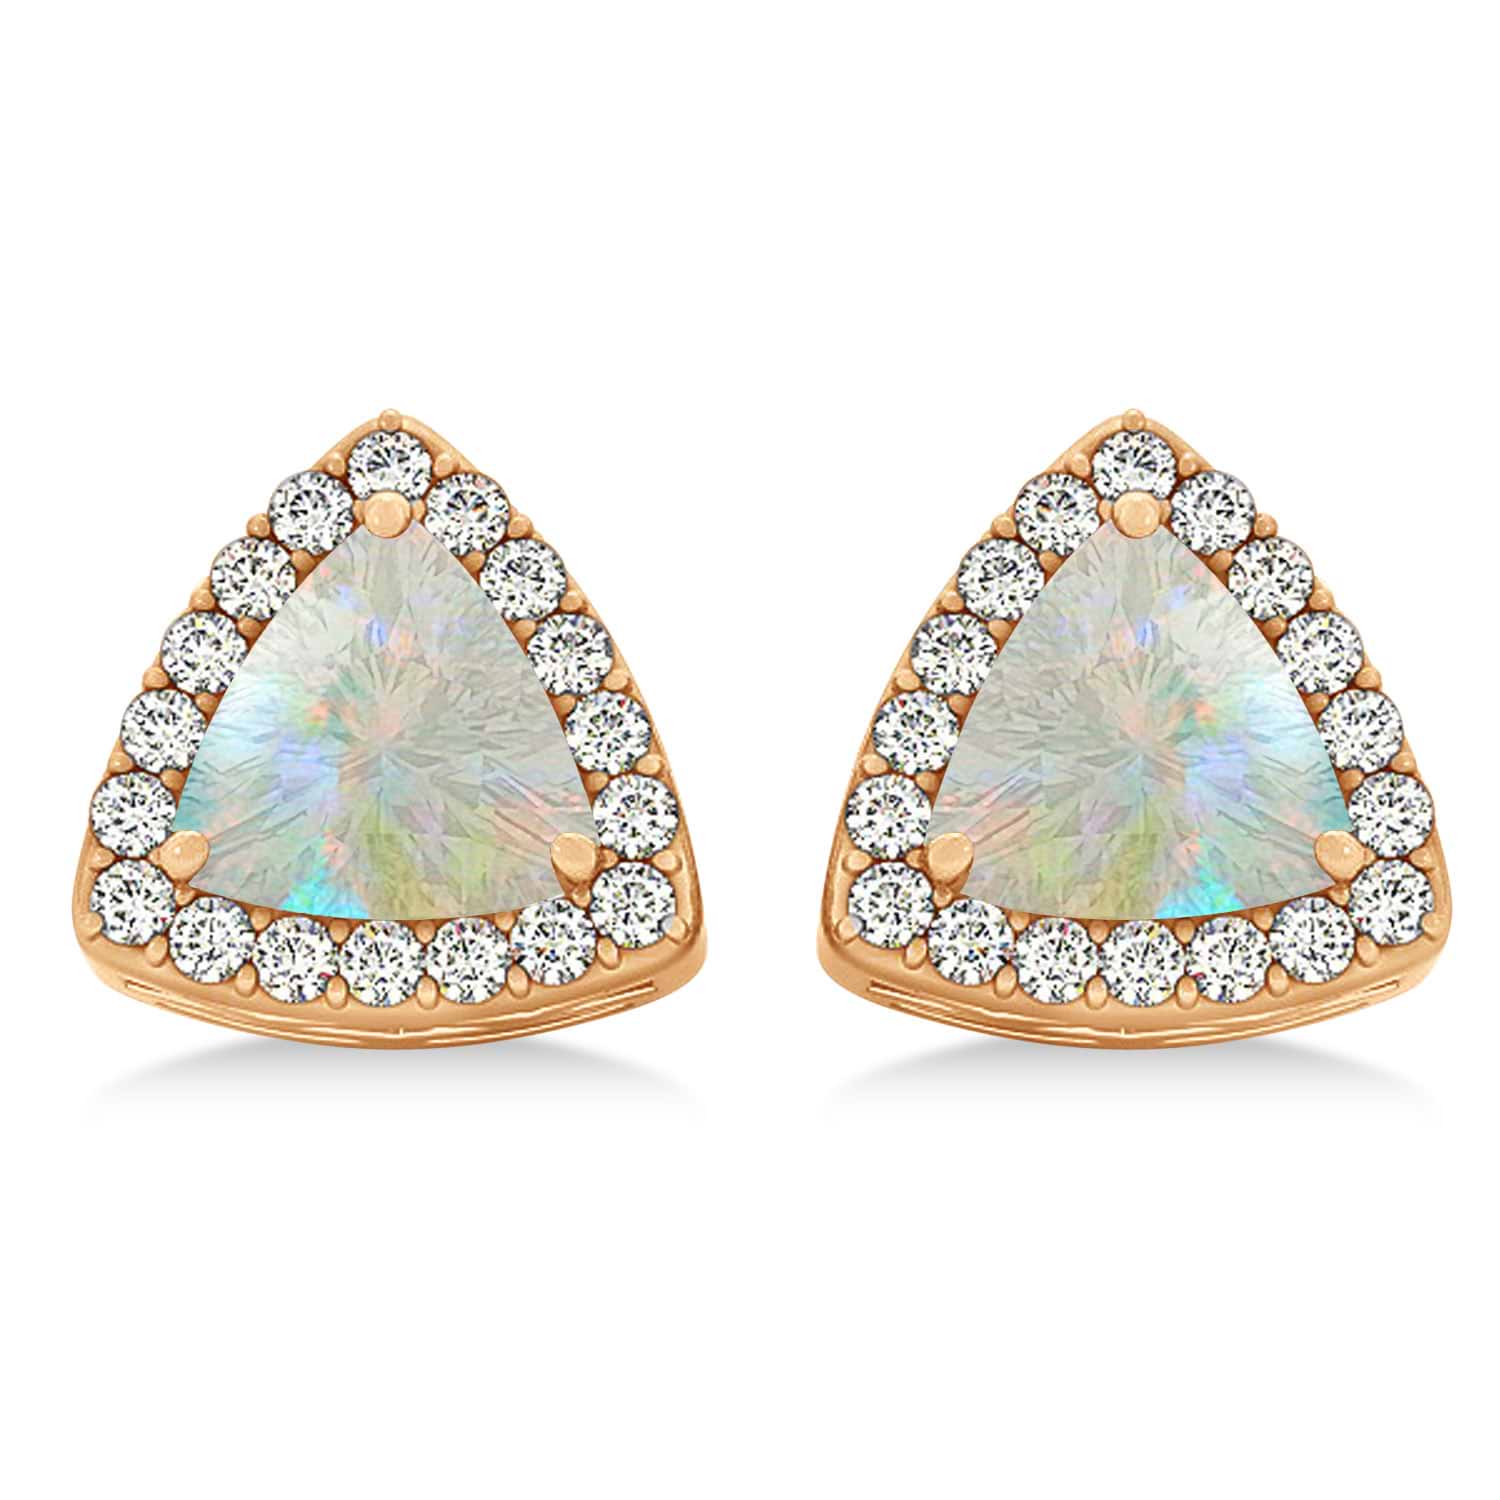 Trilliant Cut Opal & Diamond Halo Earrings 14k Rose Gold (0.93ct)